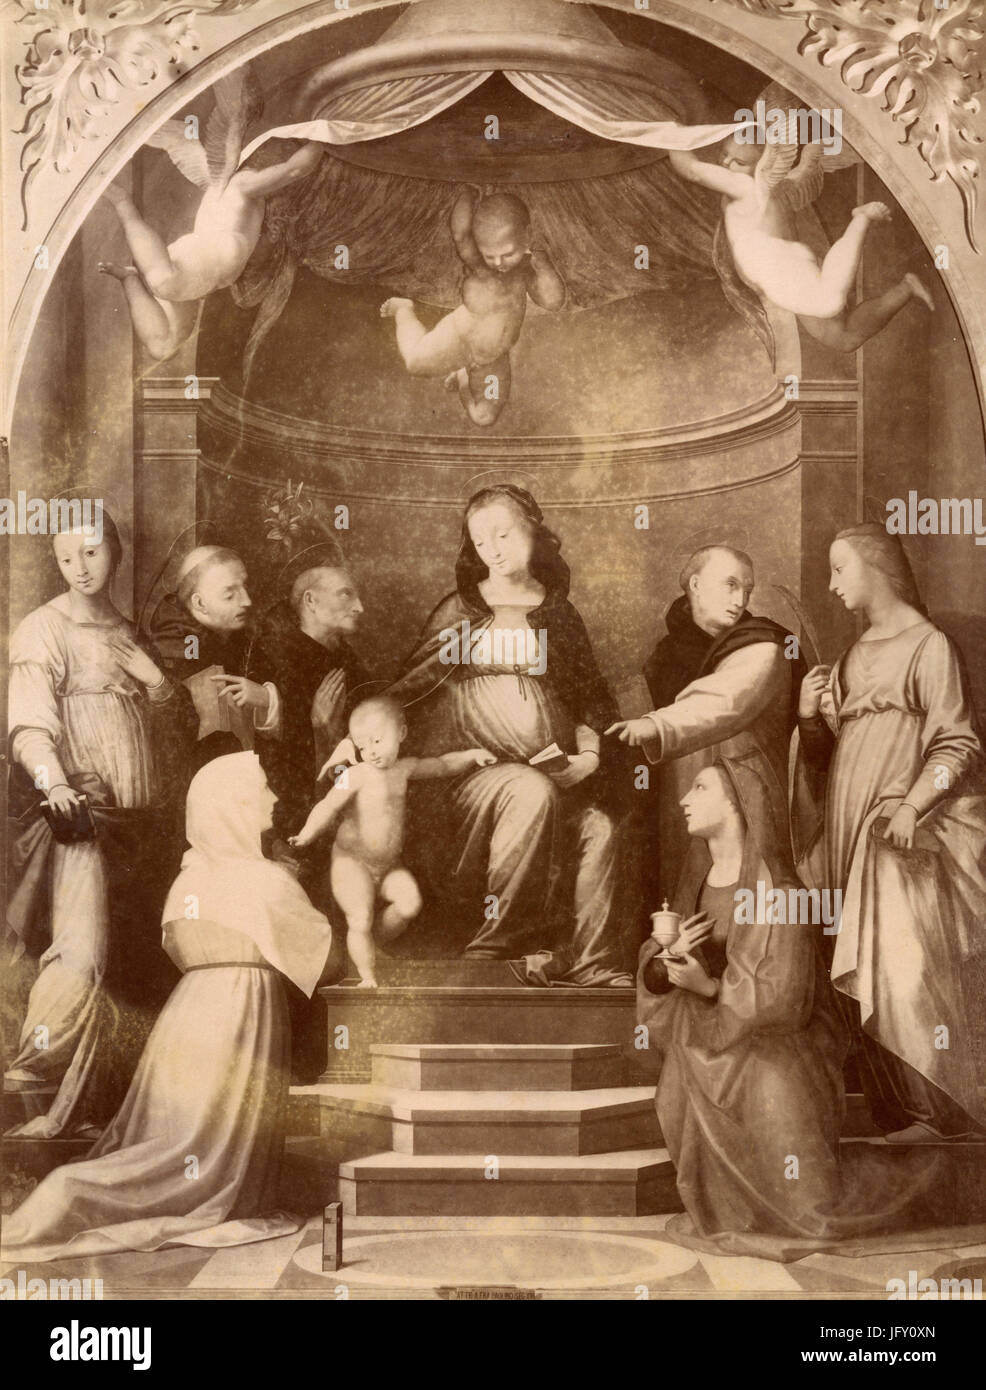 La Vierge et l'enfant avec les saints, peinture de Francia, Florence, Italie Banque D'Images